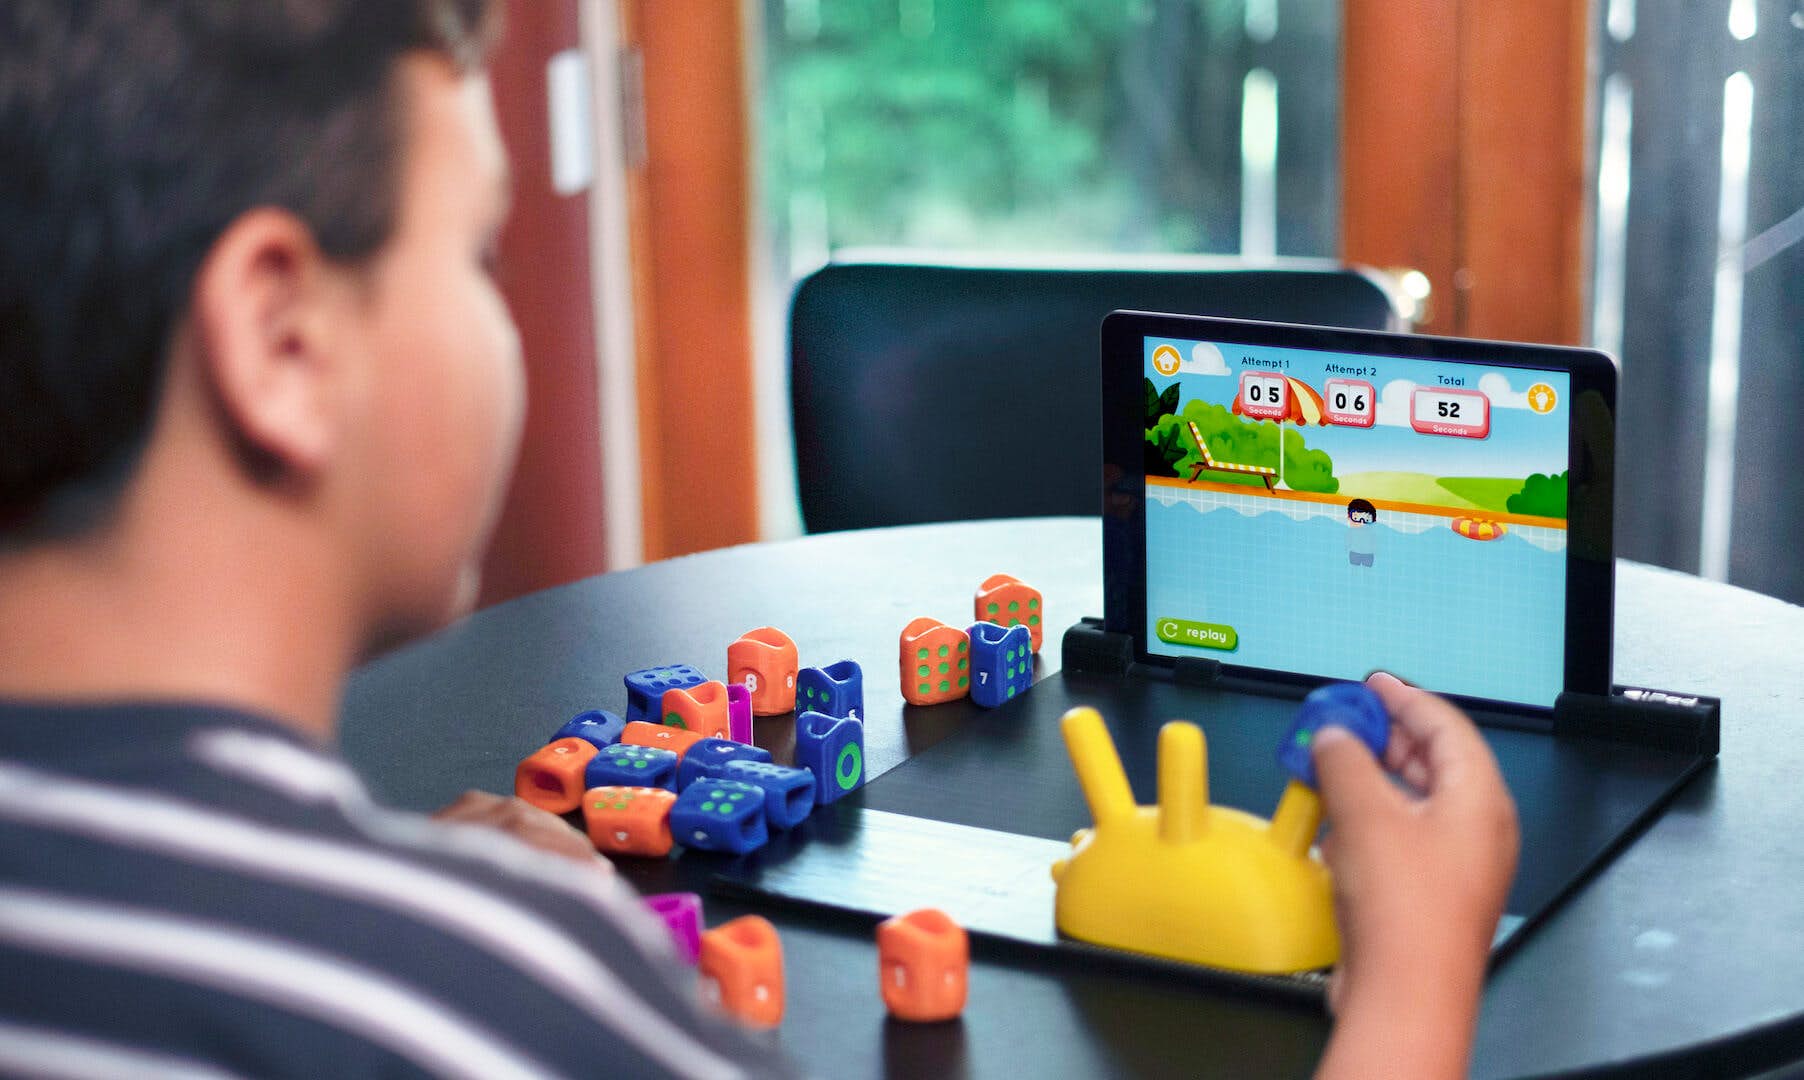 Základom novej hernej platformy Plugo je takzvaný GamePad, čiže dokovacia stanica, do ktorej sa zasunie tablet alebo smartfón a špeciálne herné ovládače.